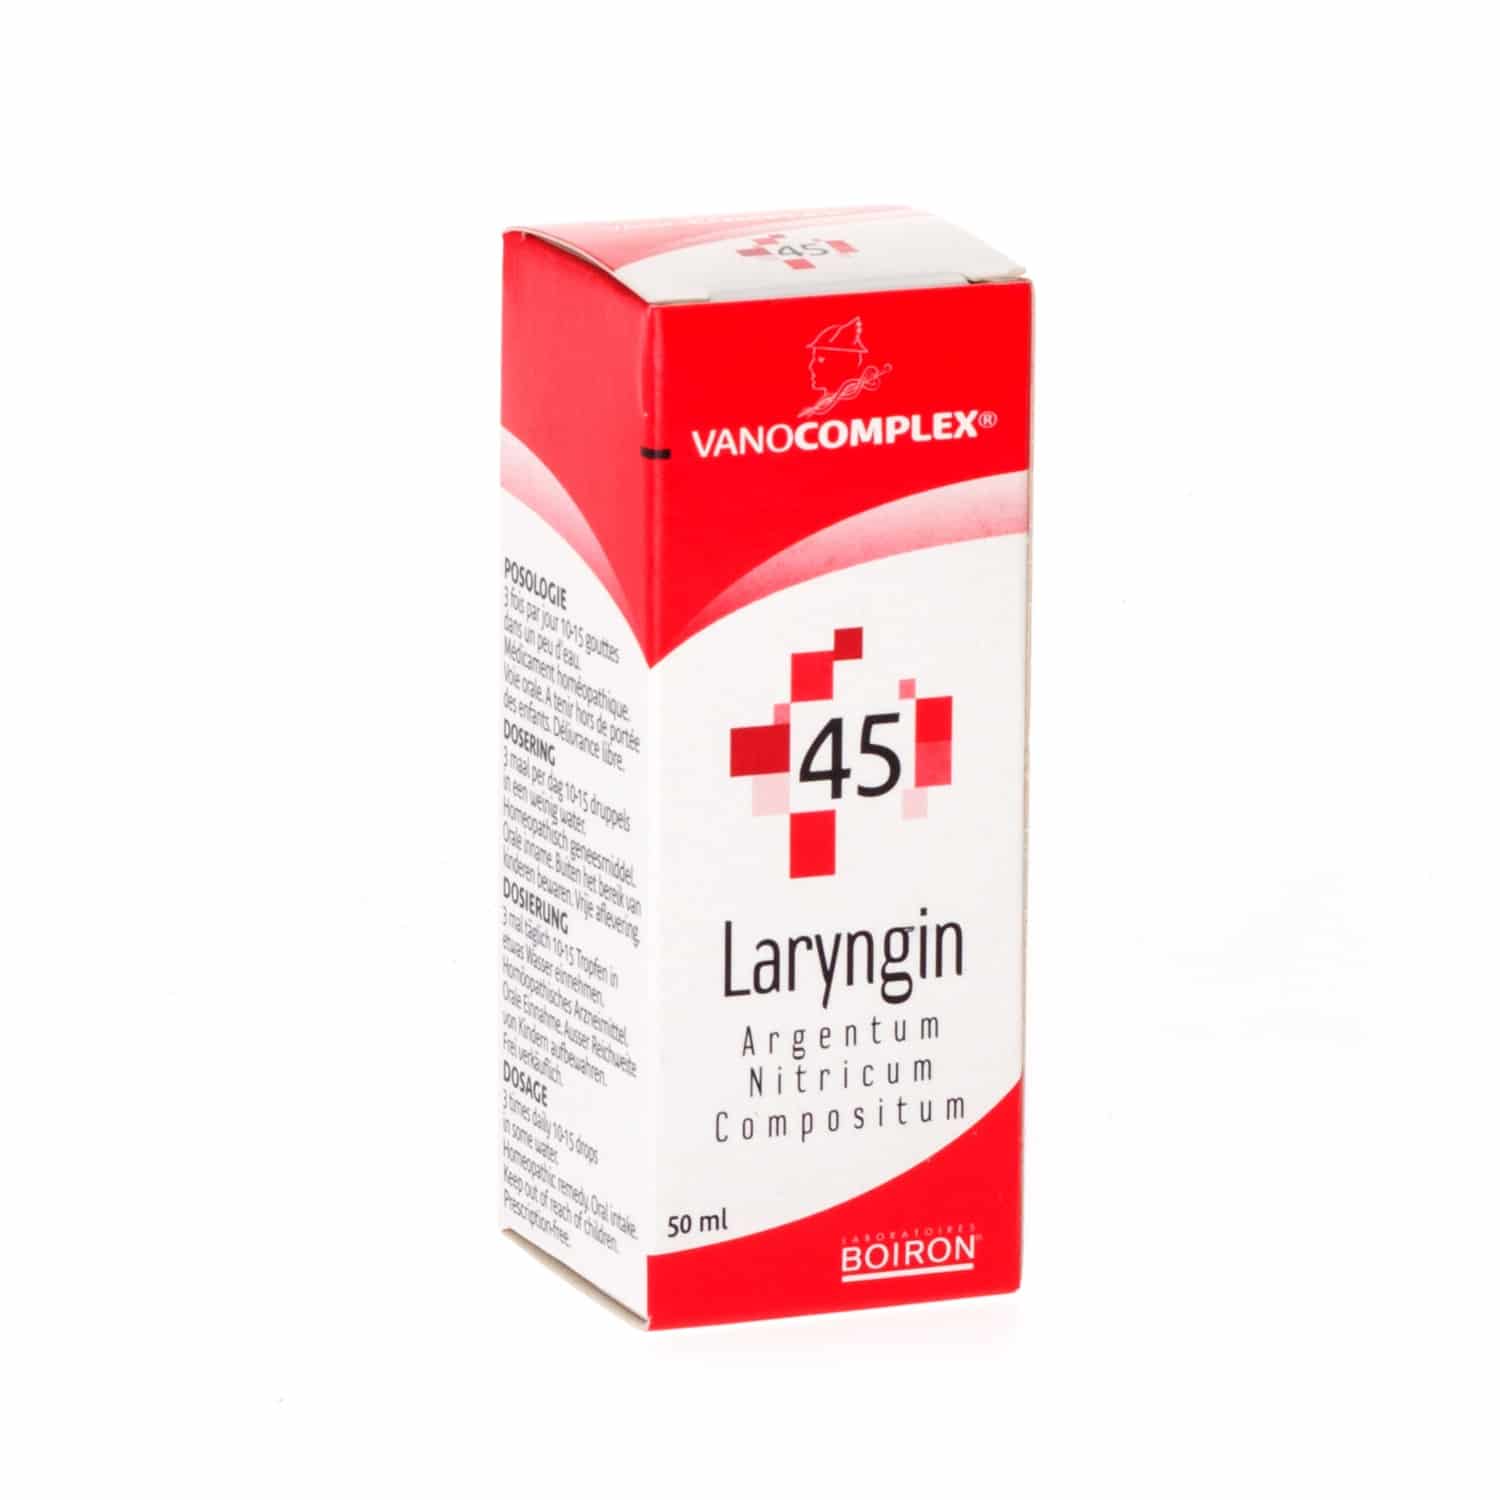 Vanocomplex Nr. 45 Laryngin